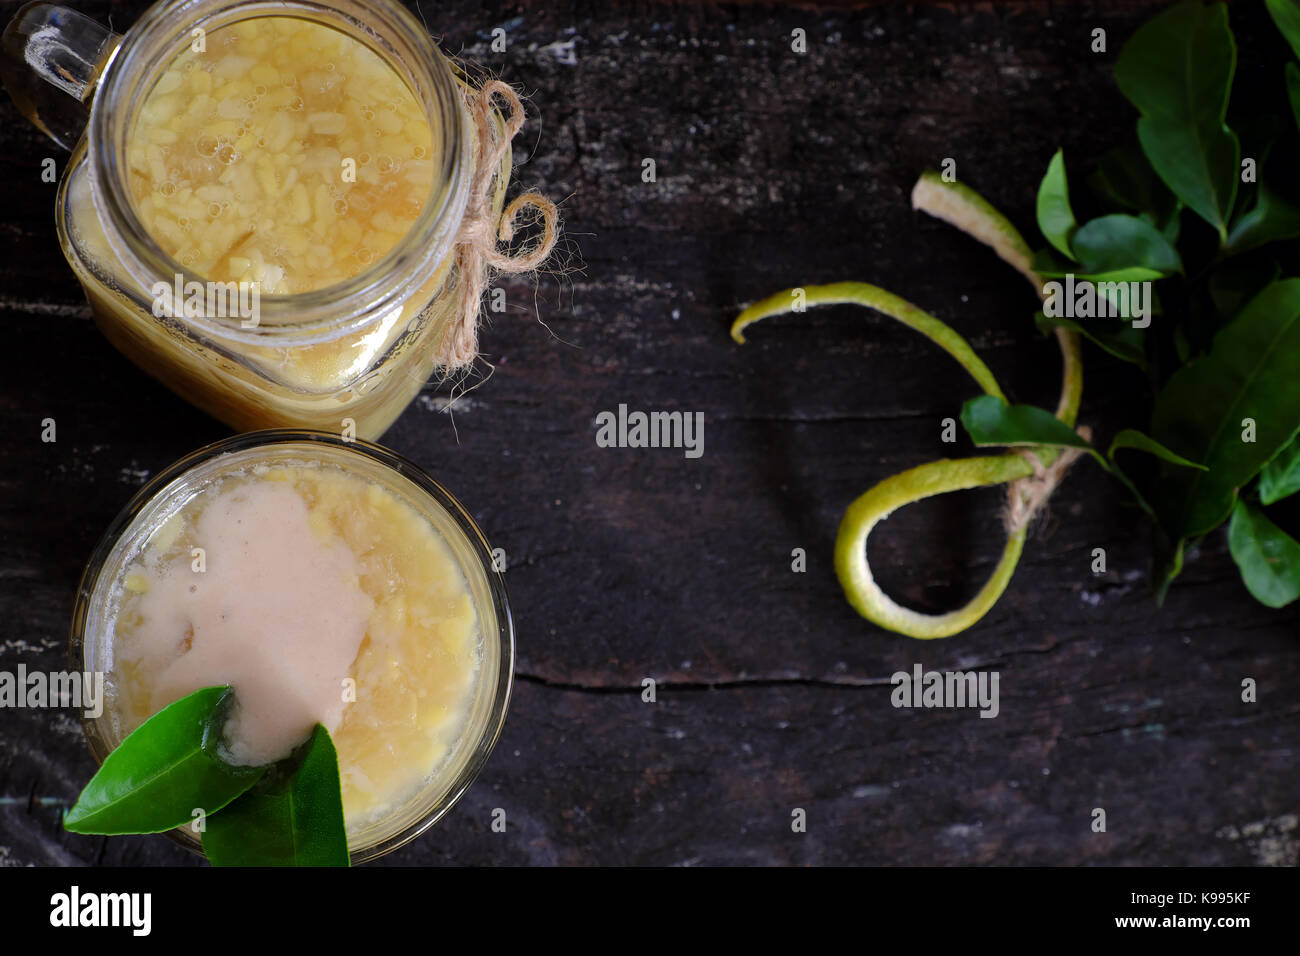 La nourriture vietnamienne pour dessert, che buoi ou de pamplemousse, un doux gruel populaires Soupe sucrée de fruits raisin couenne effilées avec haricot vert, le lait de coco Banque D'Images